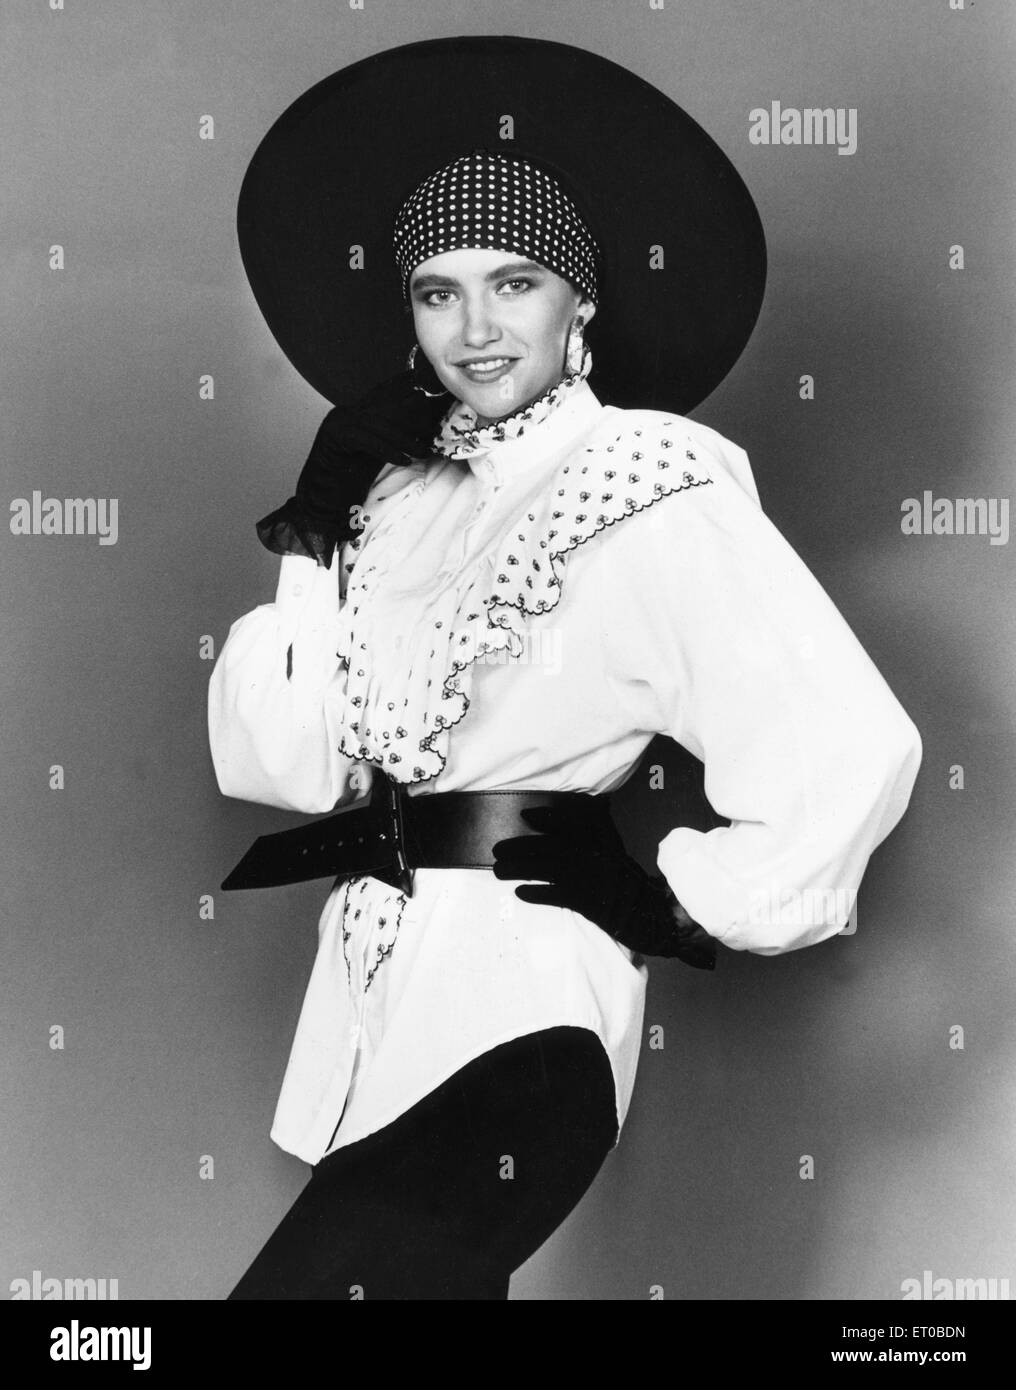 die 1980er Jahre Damenmode: unser Model trägt. Weiße Halskrause Gürtel Bluse schwarze Leggins, Handschuhe und Hut mit breiter Krempe. 7. August 1989 Stockfoto